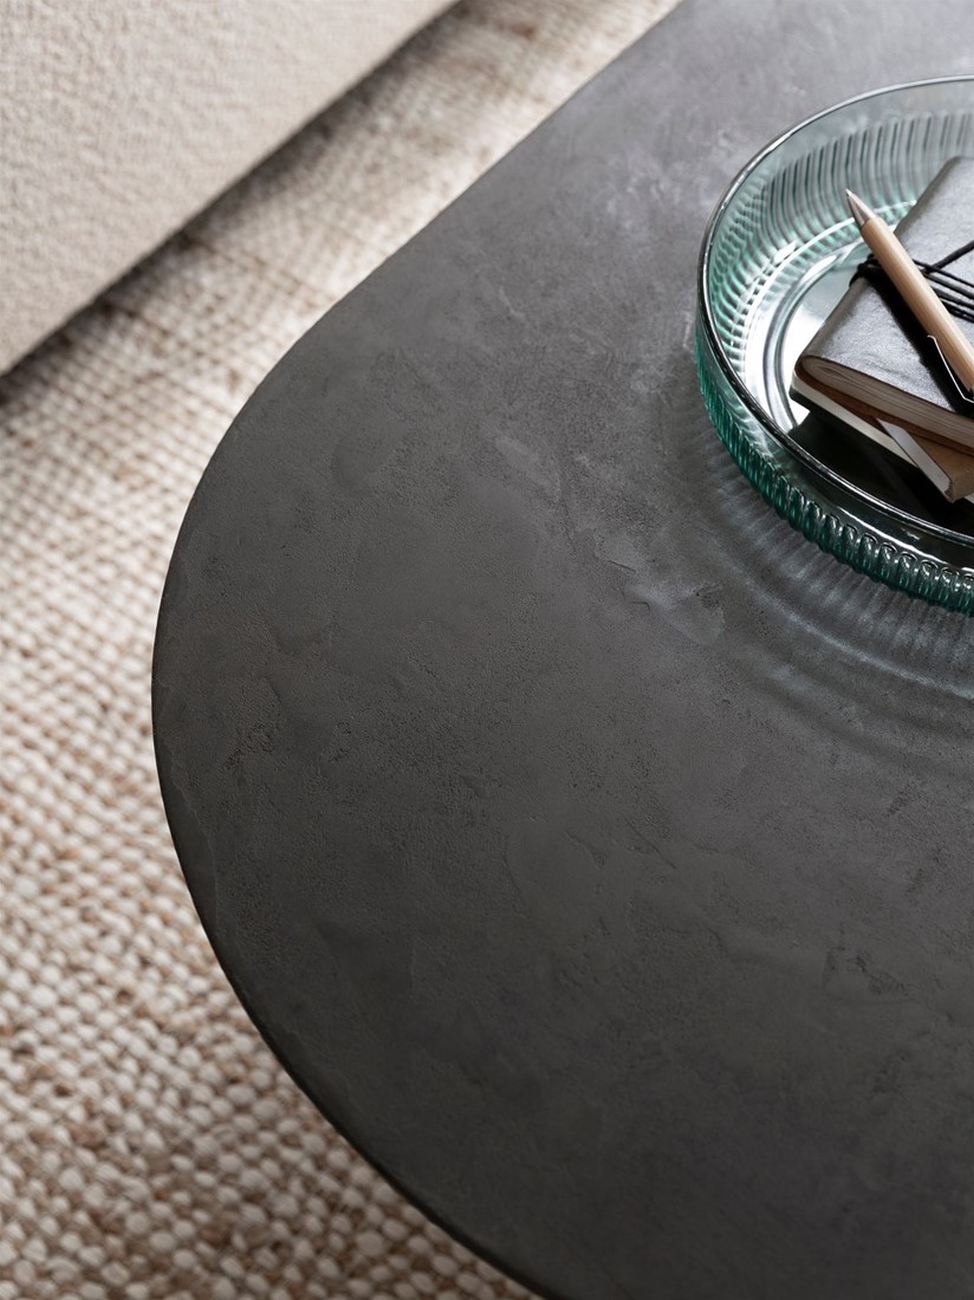 Der Couchtisch Soho überzeugt mit seinem modernen Design. Gefertigt wurde es aus recyceltem Teakholz, welches einen schwarzen Farbton besitzt. Das Gestell ist aus Metall und hat eine schwarze Farbe. Der Couchtisch besitzt eine Breite von 150 cm.